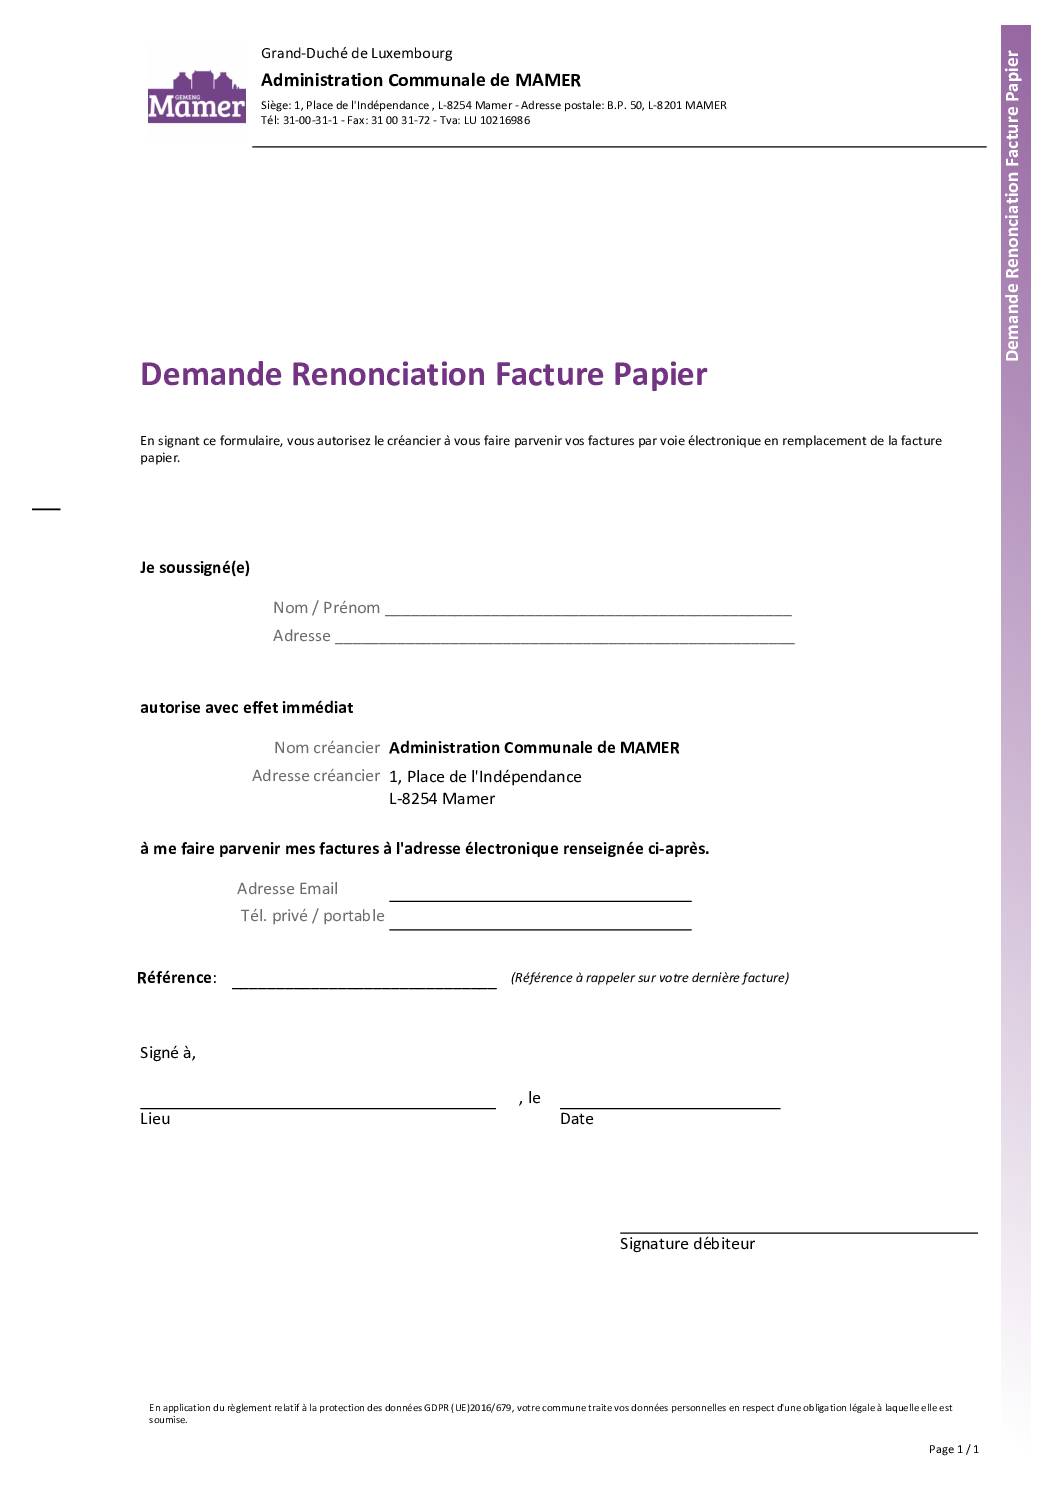 Demande_Renonciation_Facture_Papier